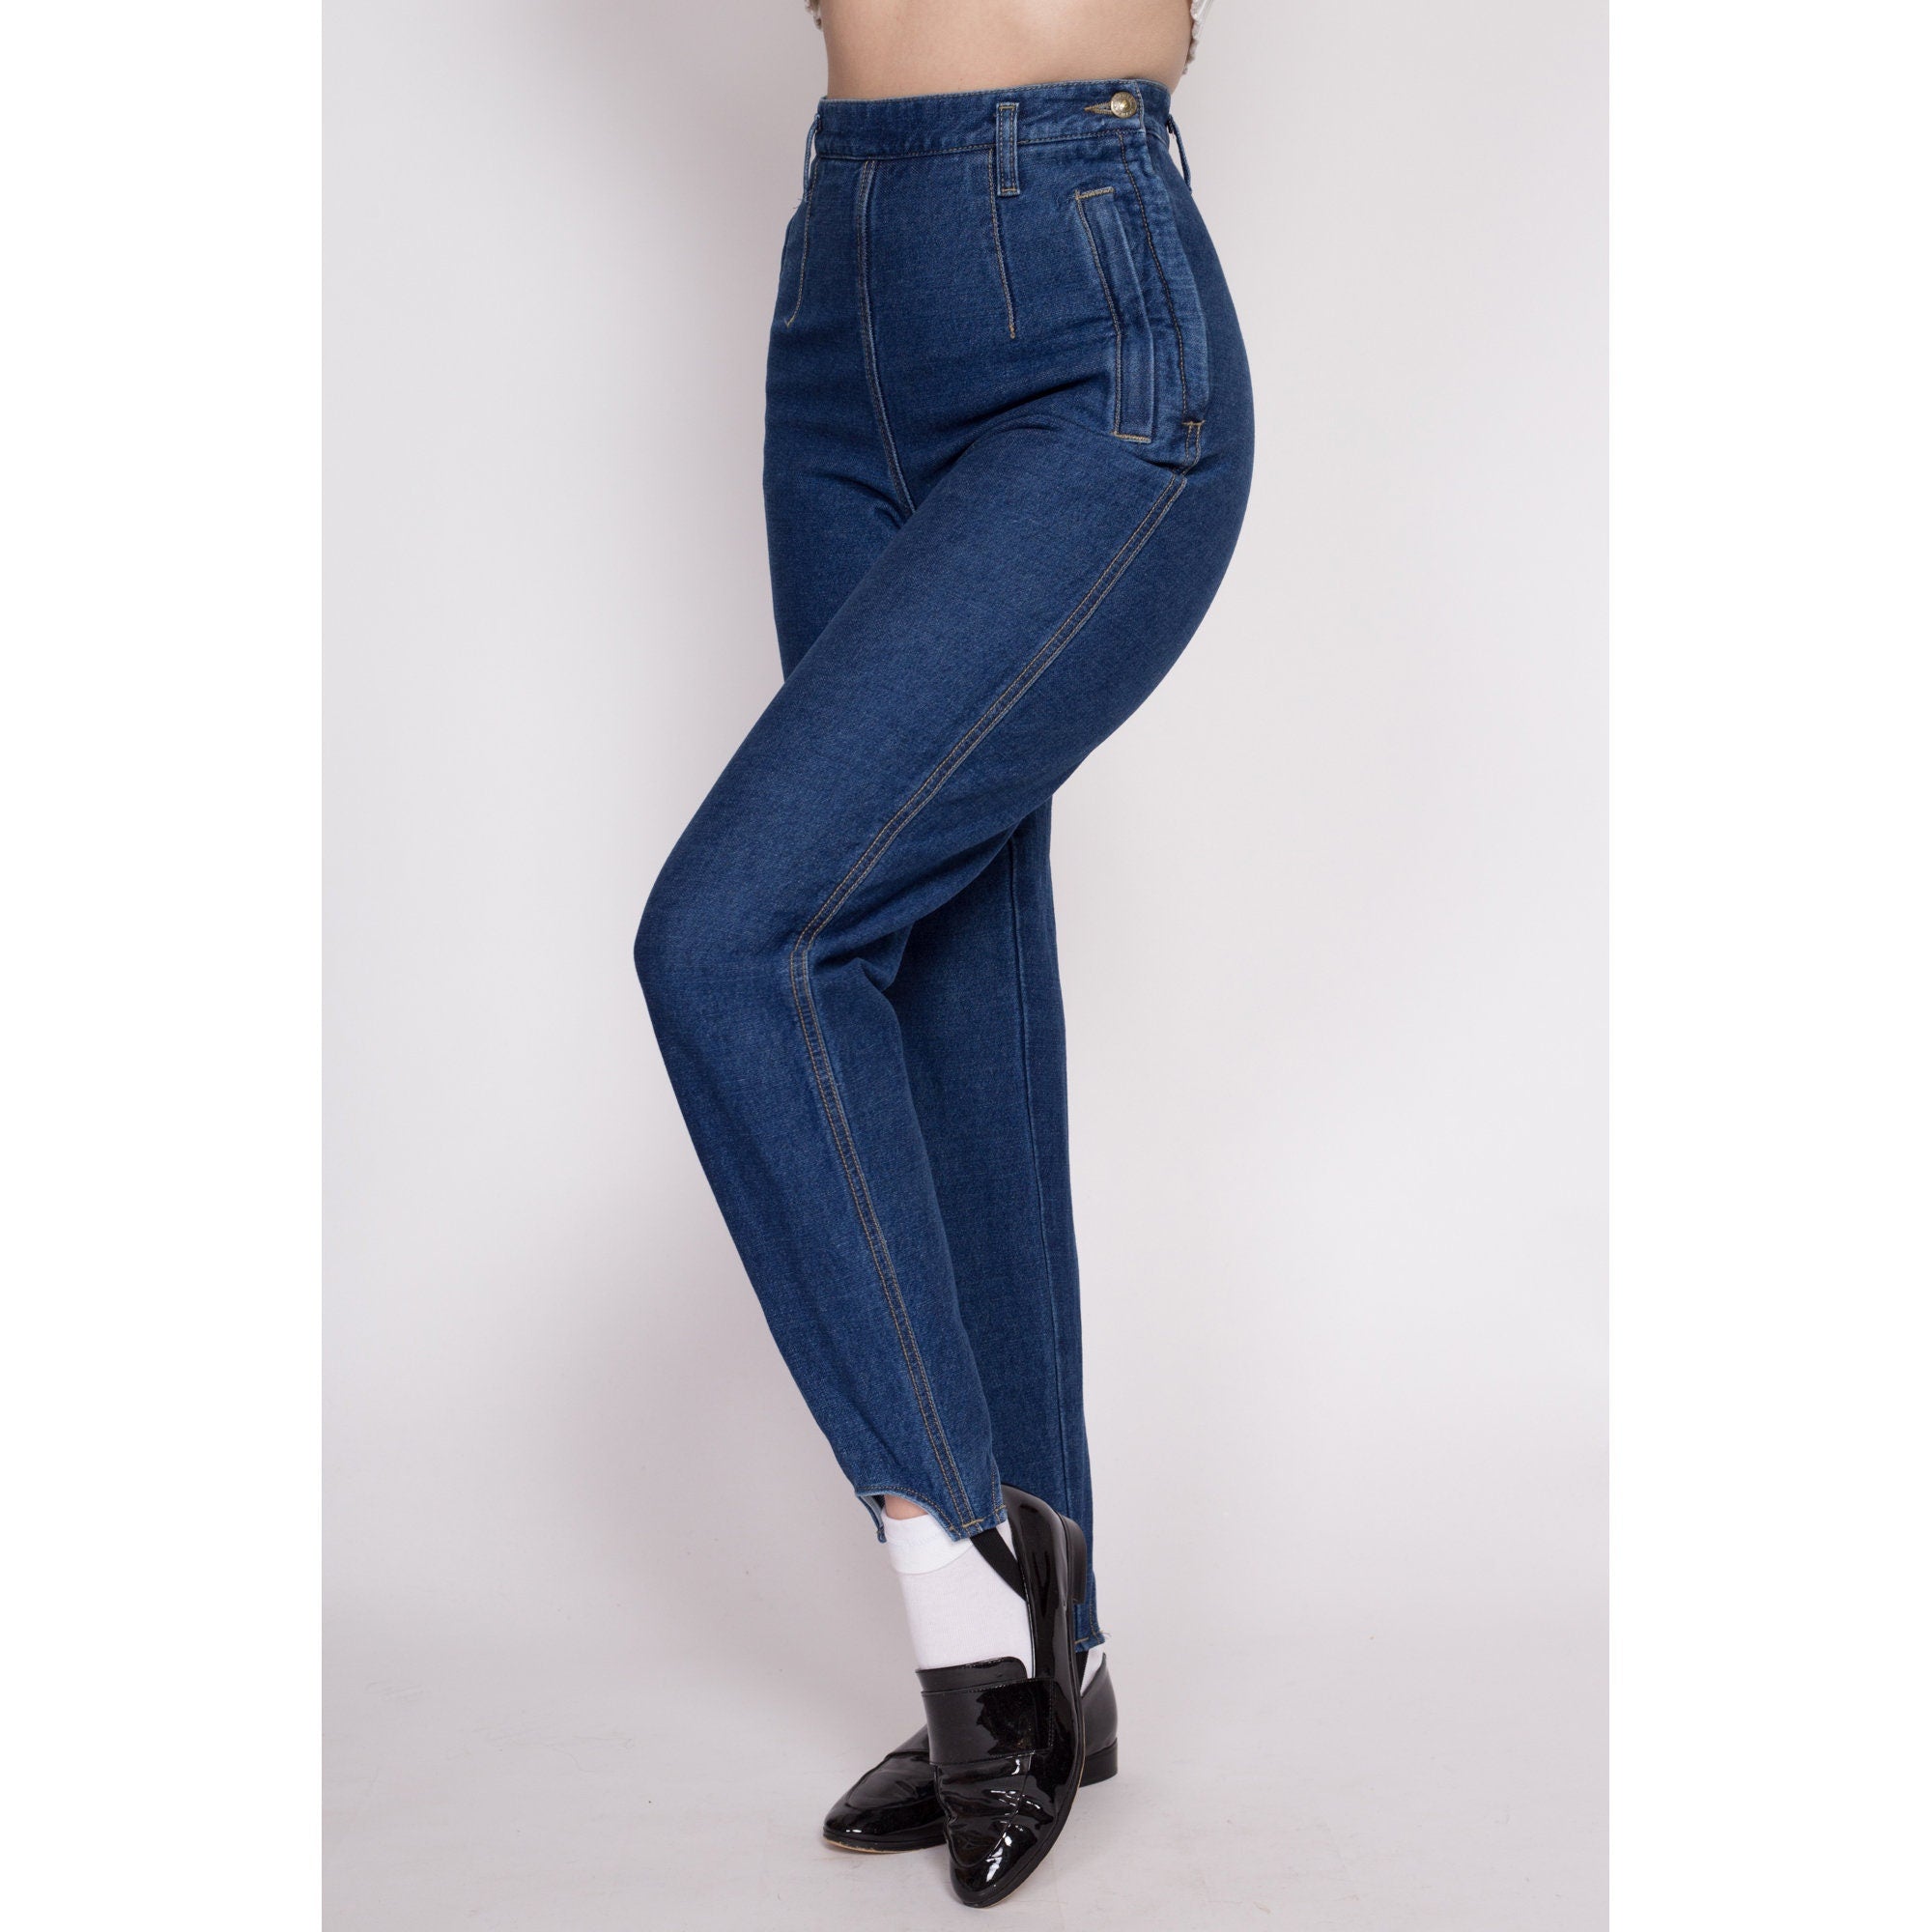 Vintage 1940's/ Early 1950's Side Zipper Denim Pants/ | Etsy Norway | Zipper  jeans, Side zipper, Fashion